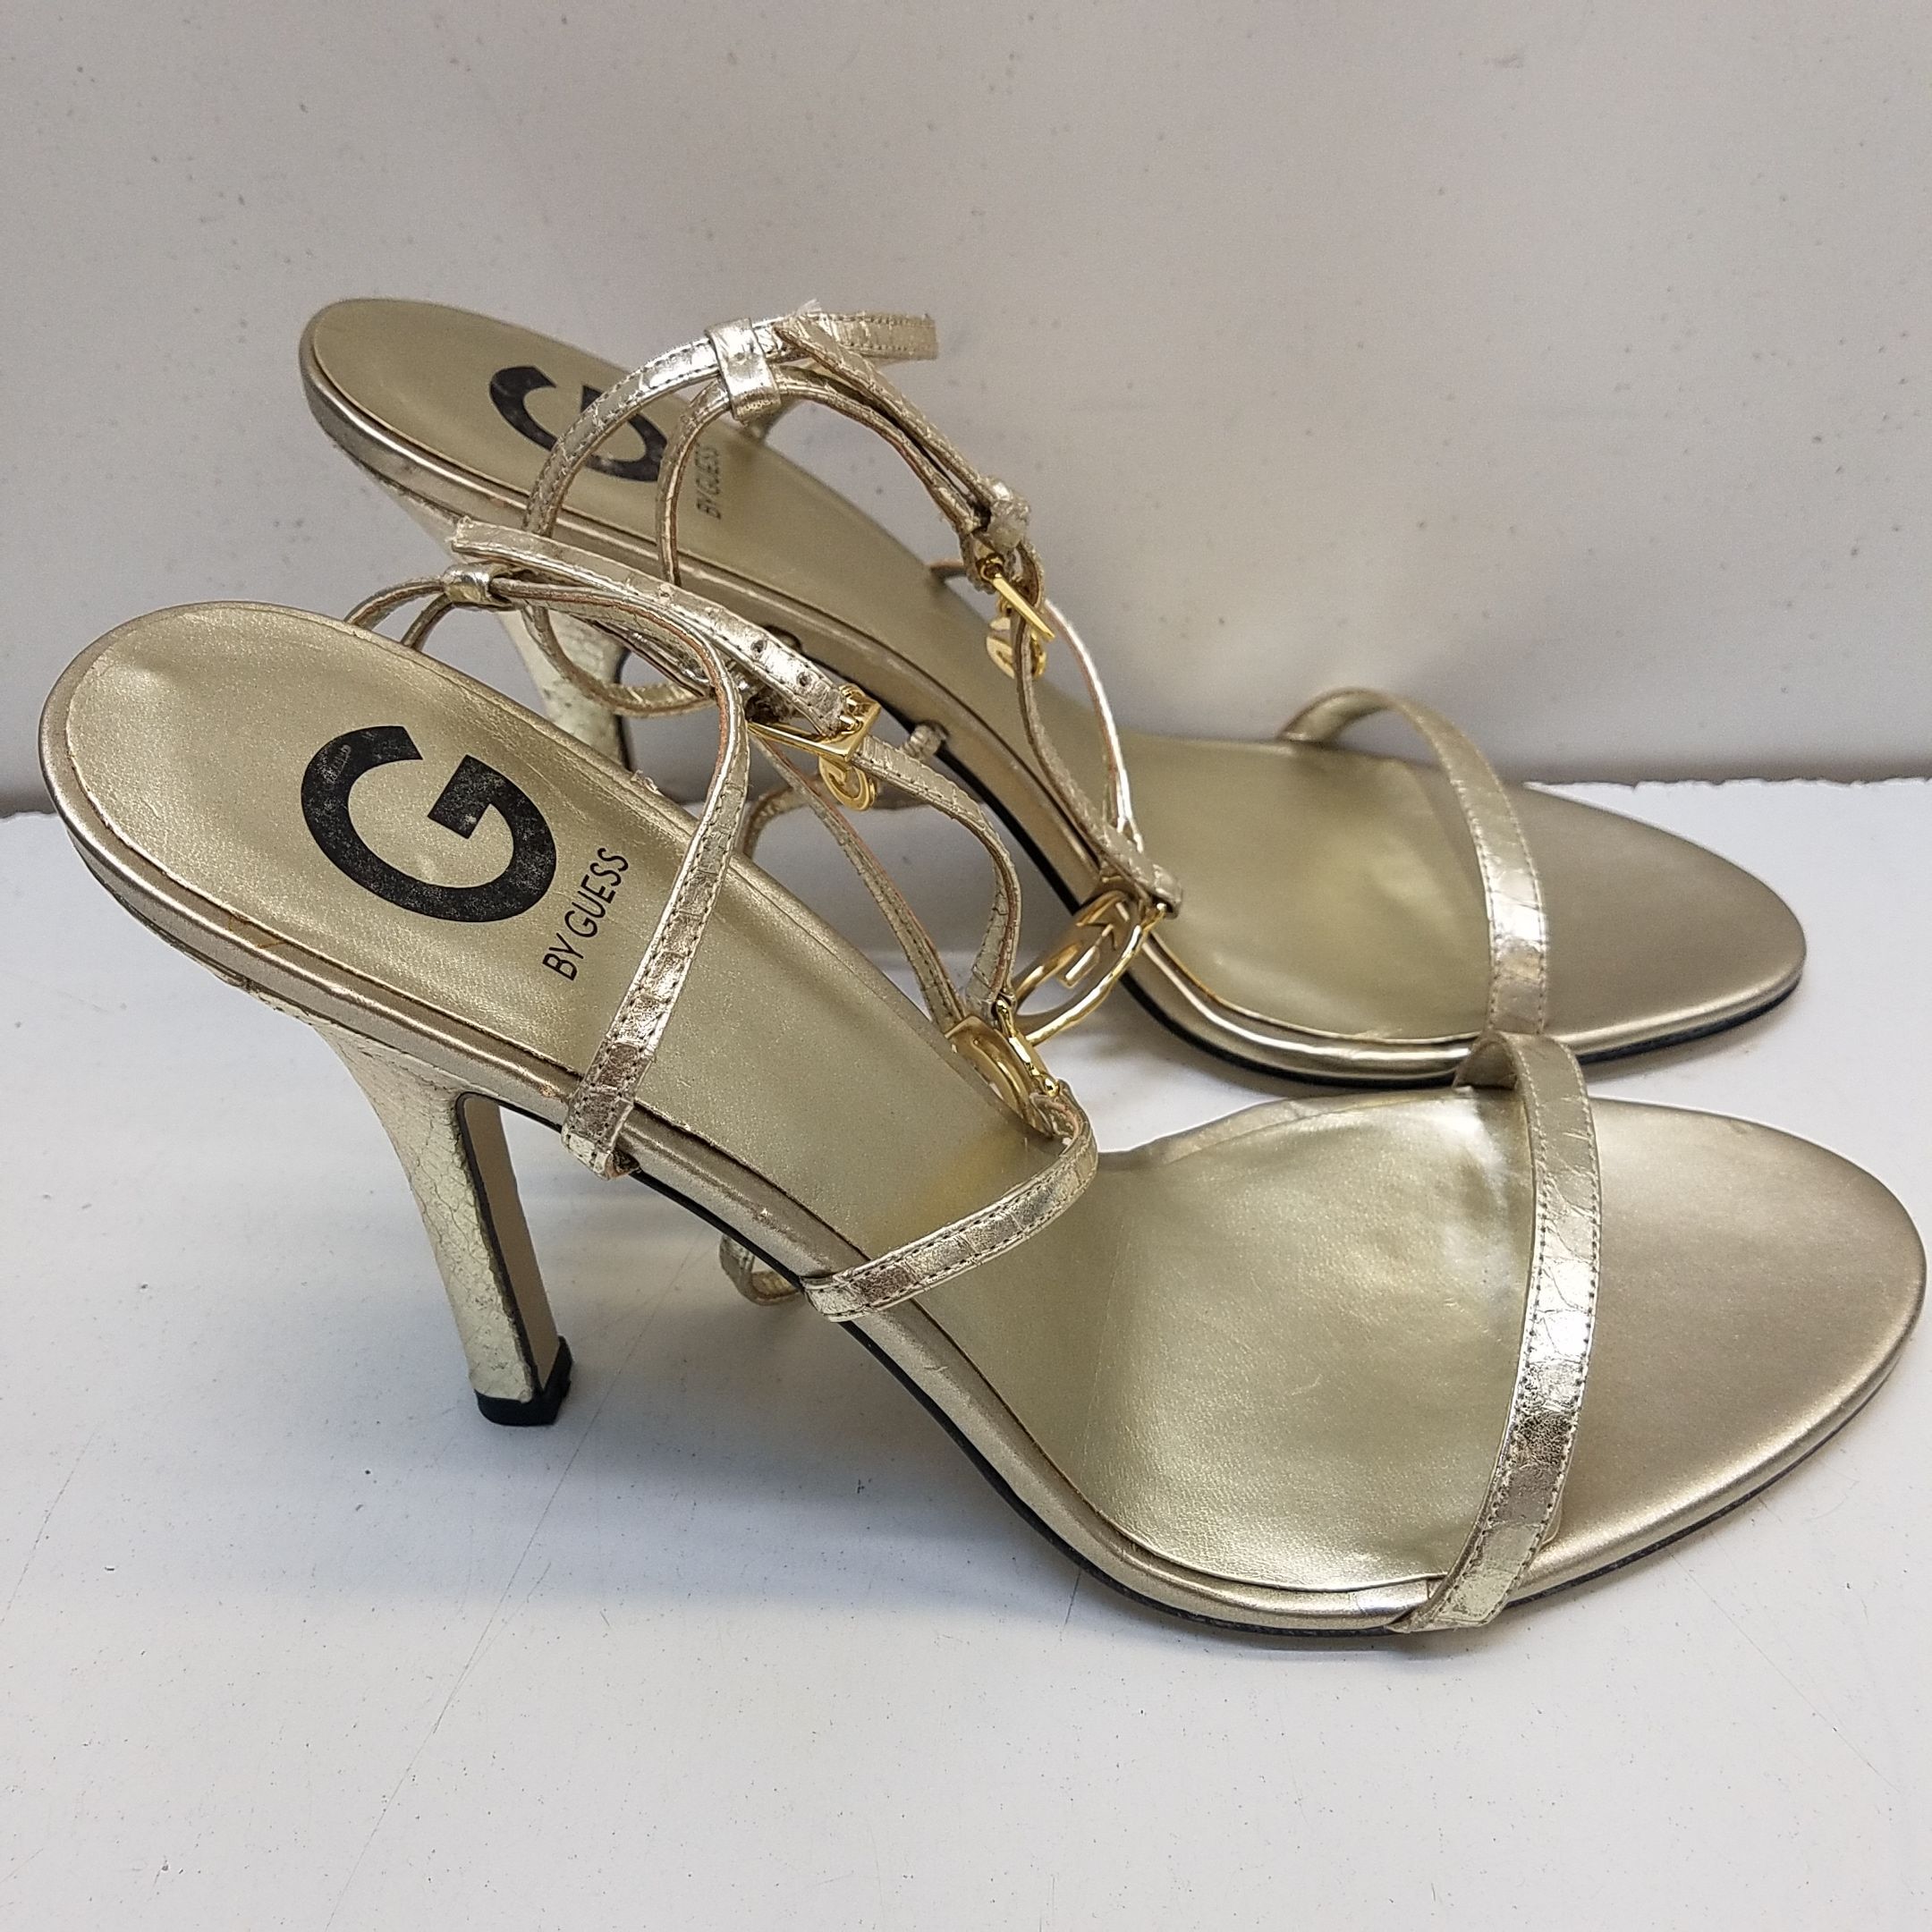 G by Guess caged suede beige heels pumps stilleto size 7.5 | eBay